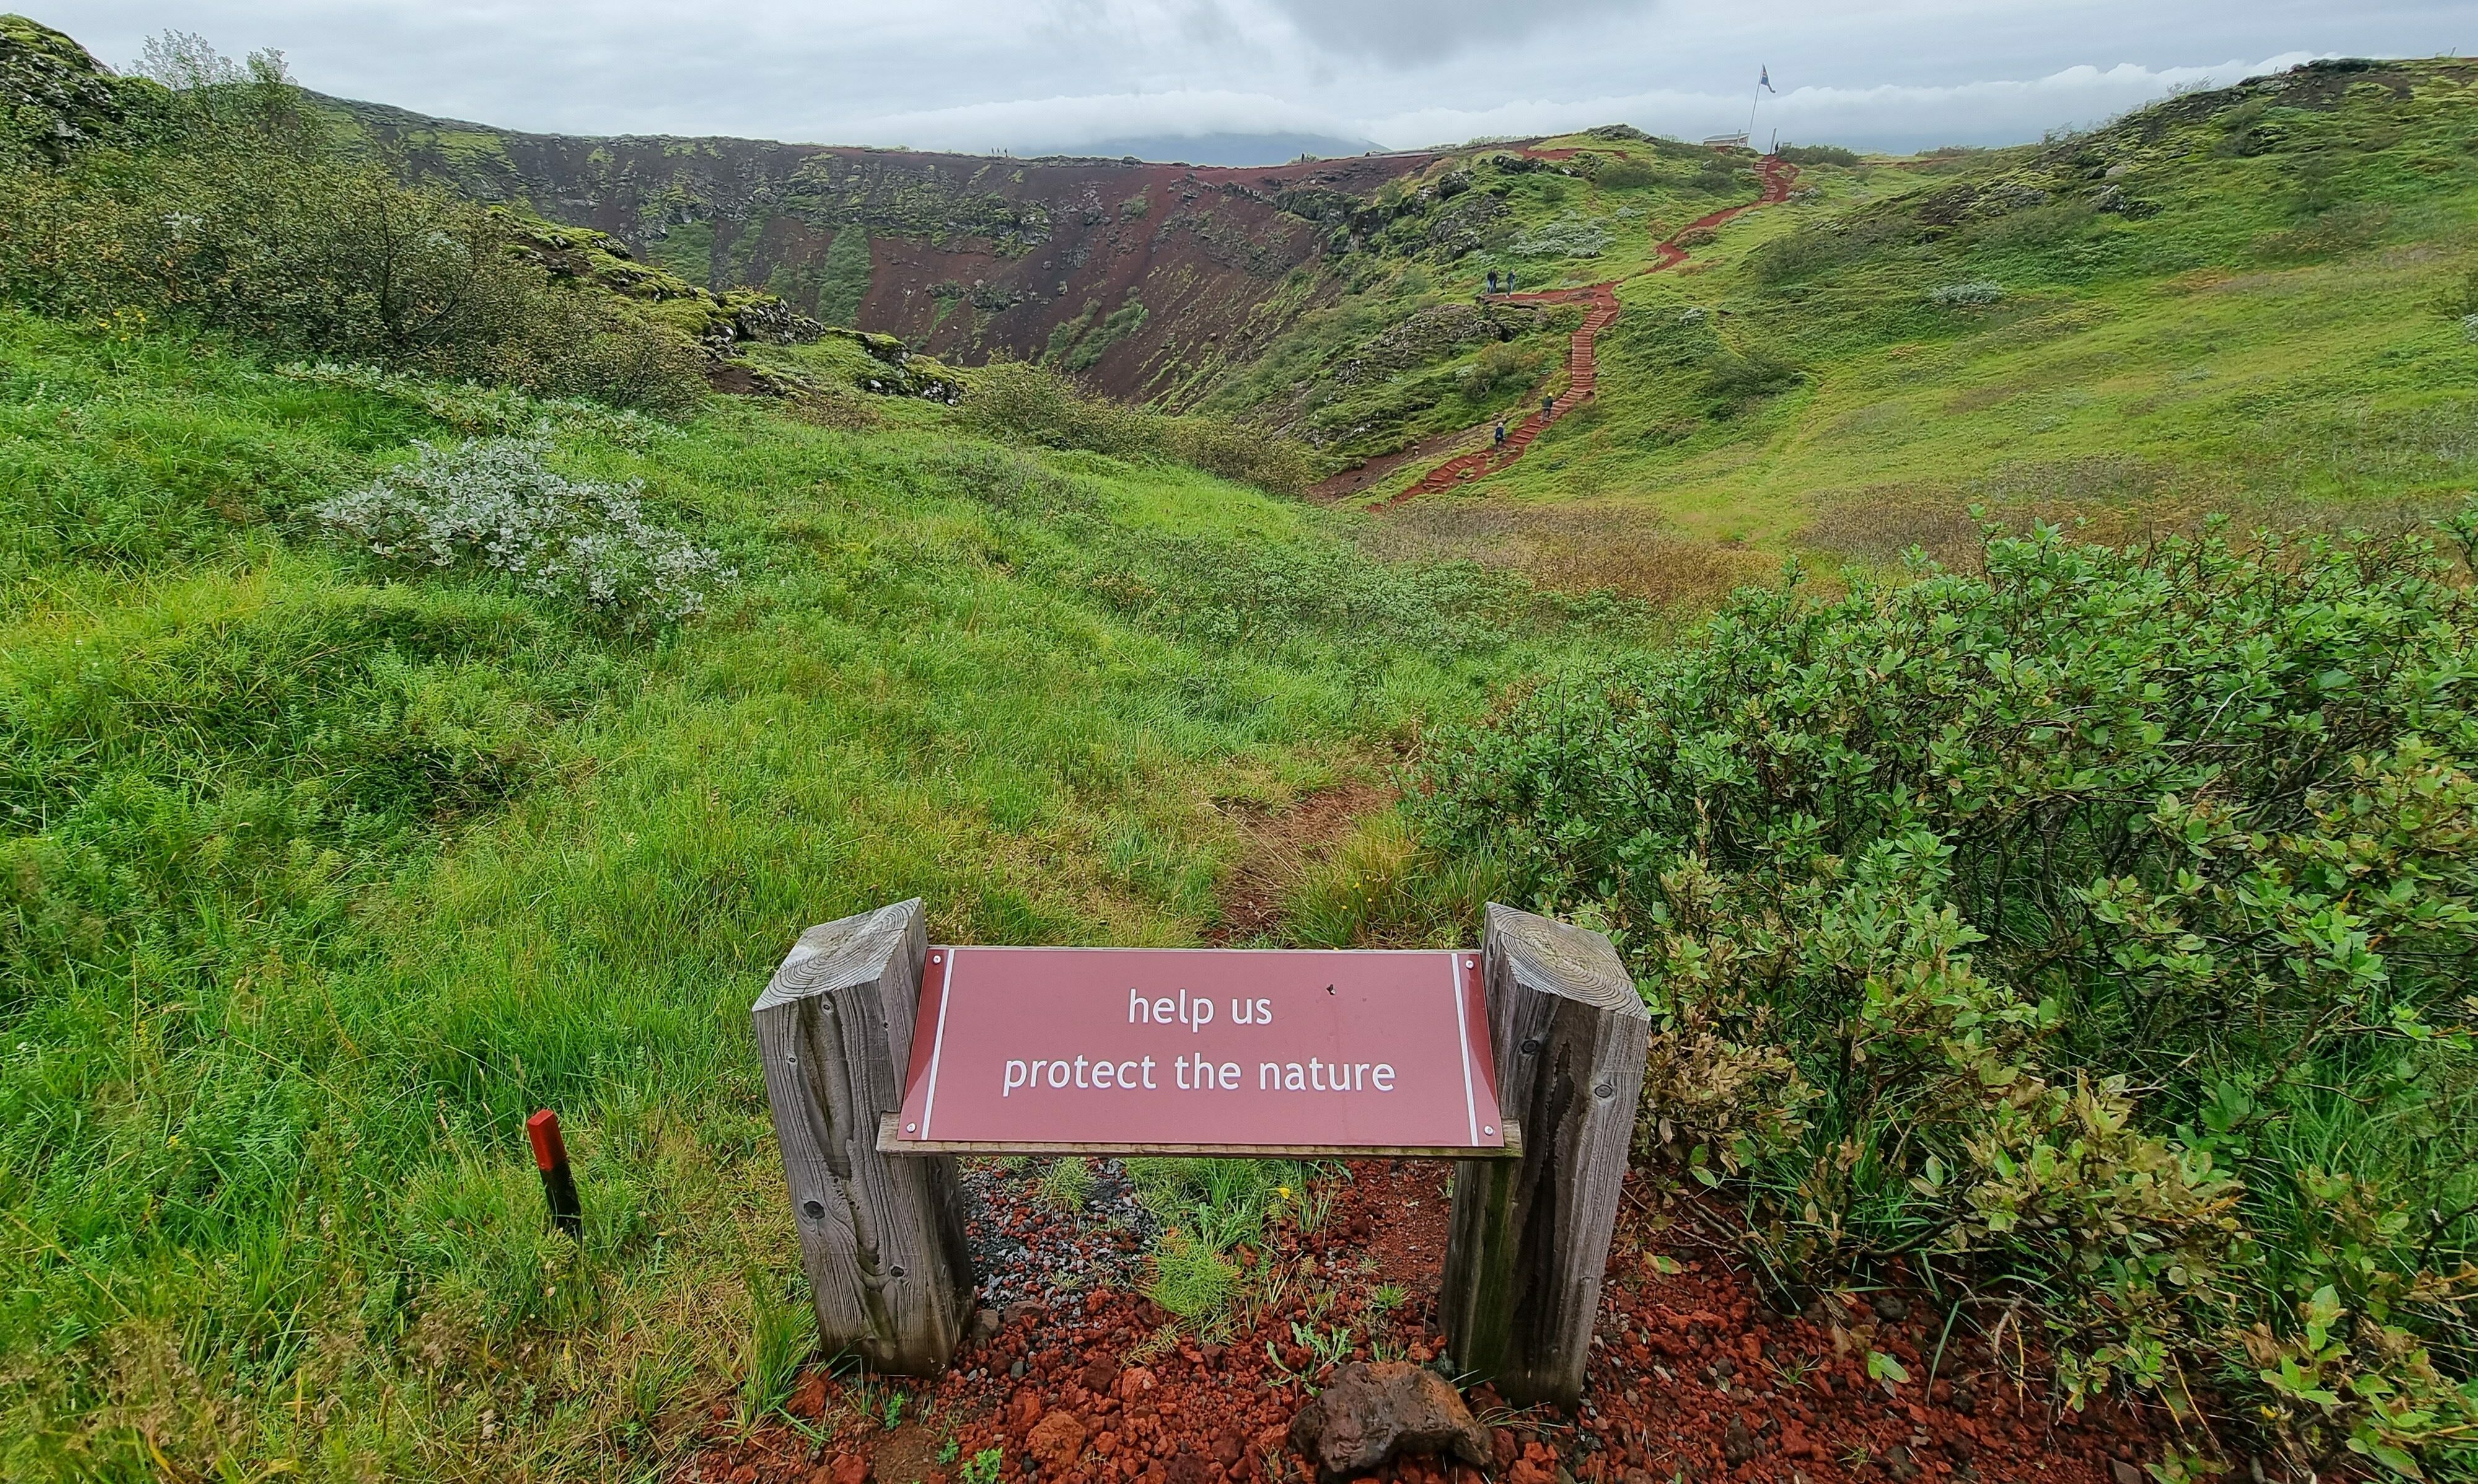 Naturschutz - help us protect nature - Schild in rot vor einem mit Gras bewachsenen Krater/Wandergebiet